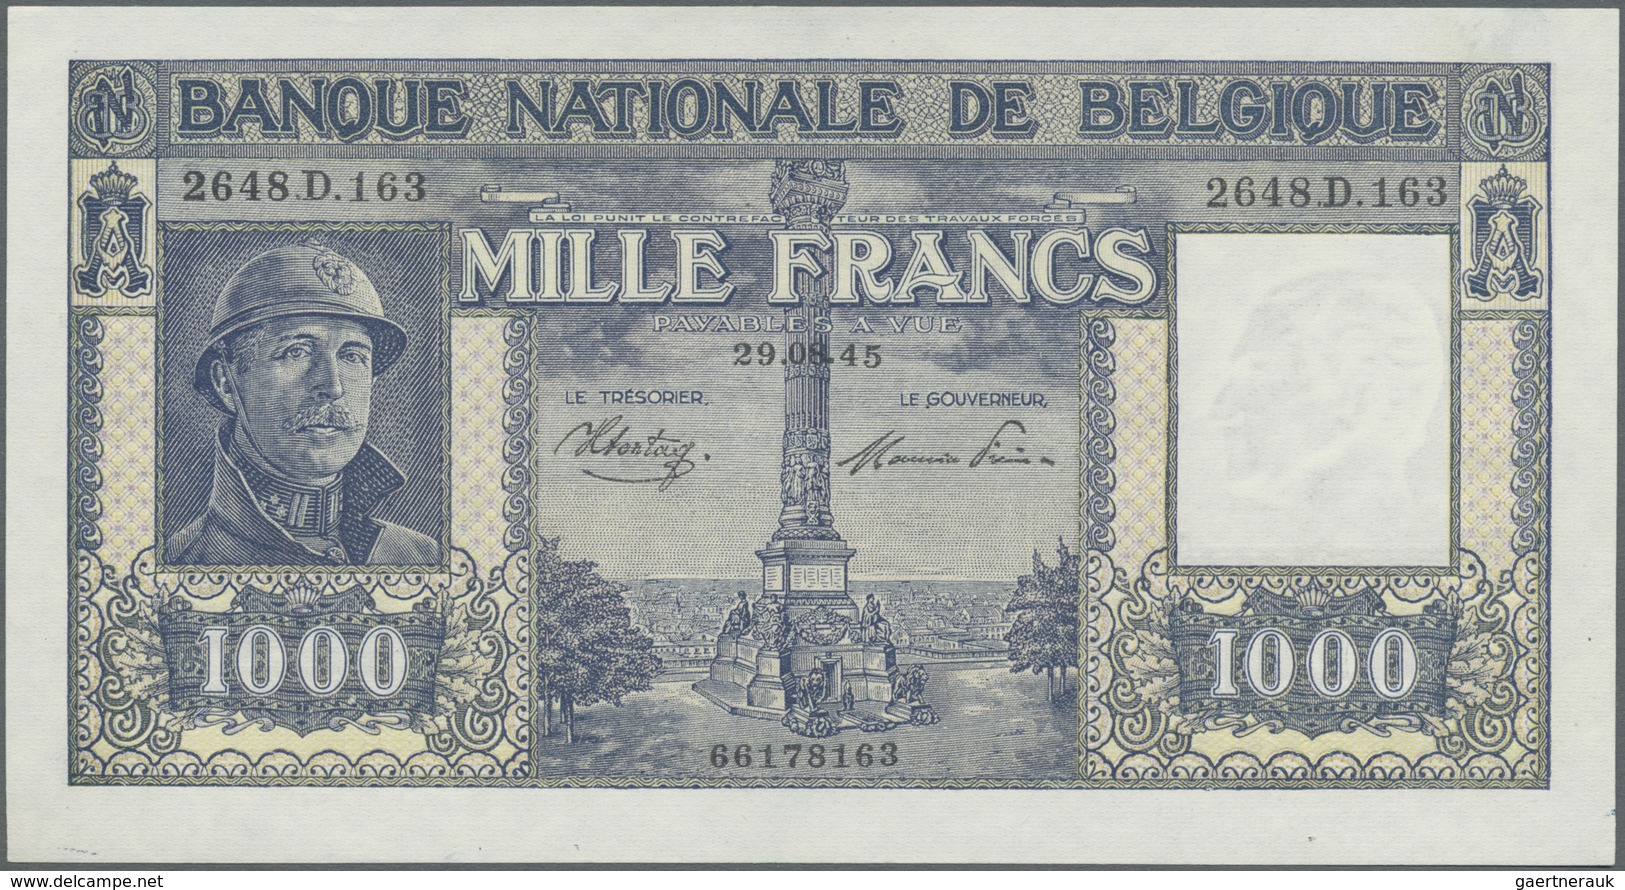 Belgium / Belgien: 1000 Francs 1945 P. 128b, In Condition: AUNC. - [ 1] …-1830 : Voor Onafhankelijkheid